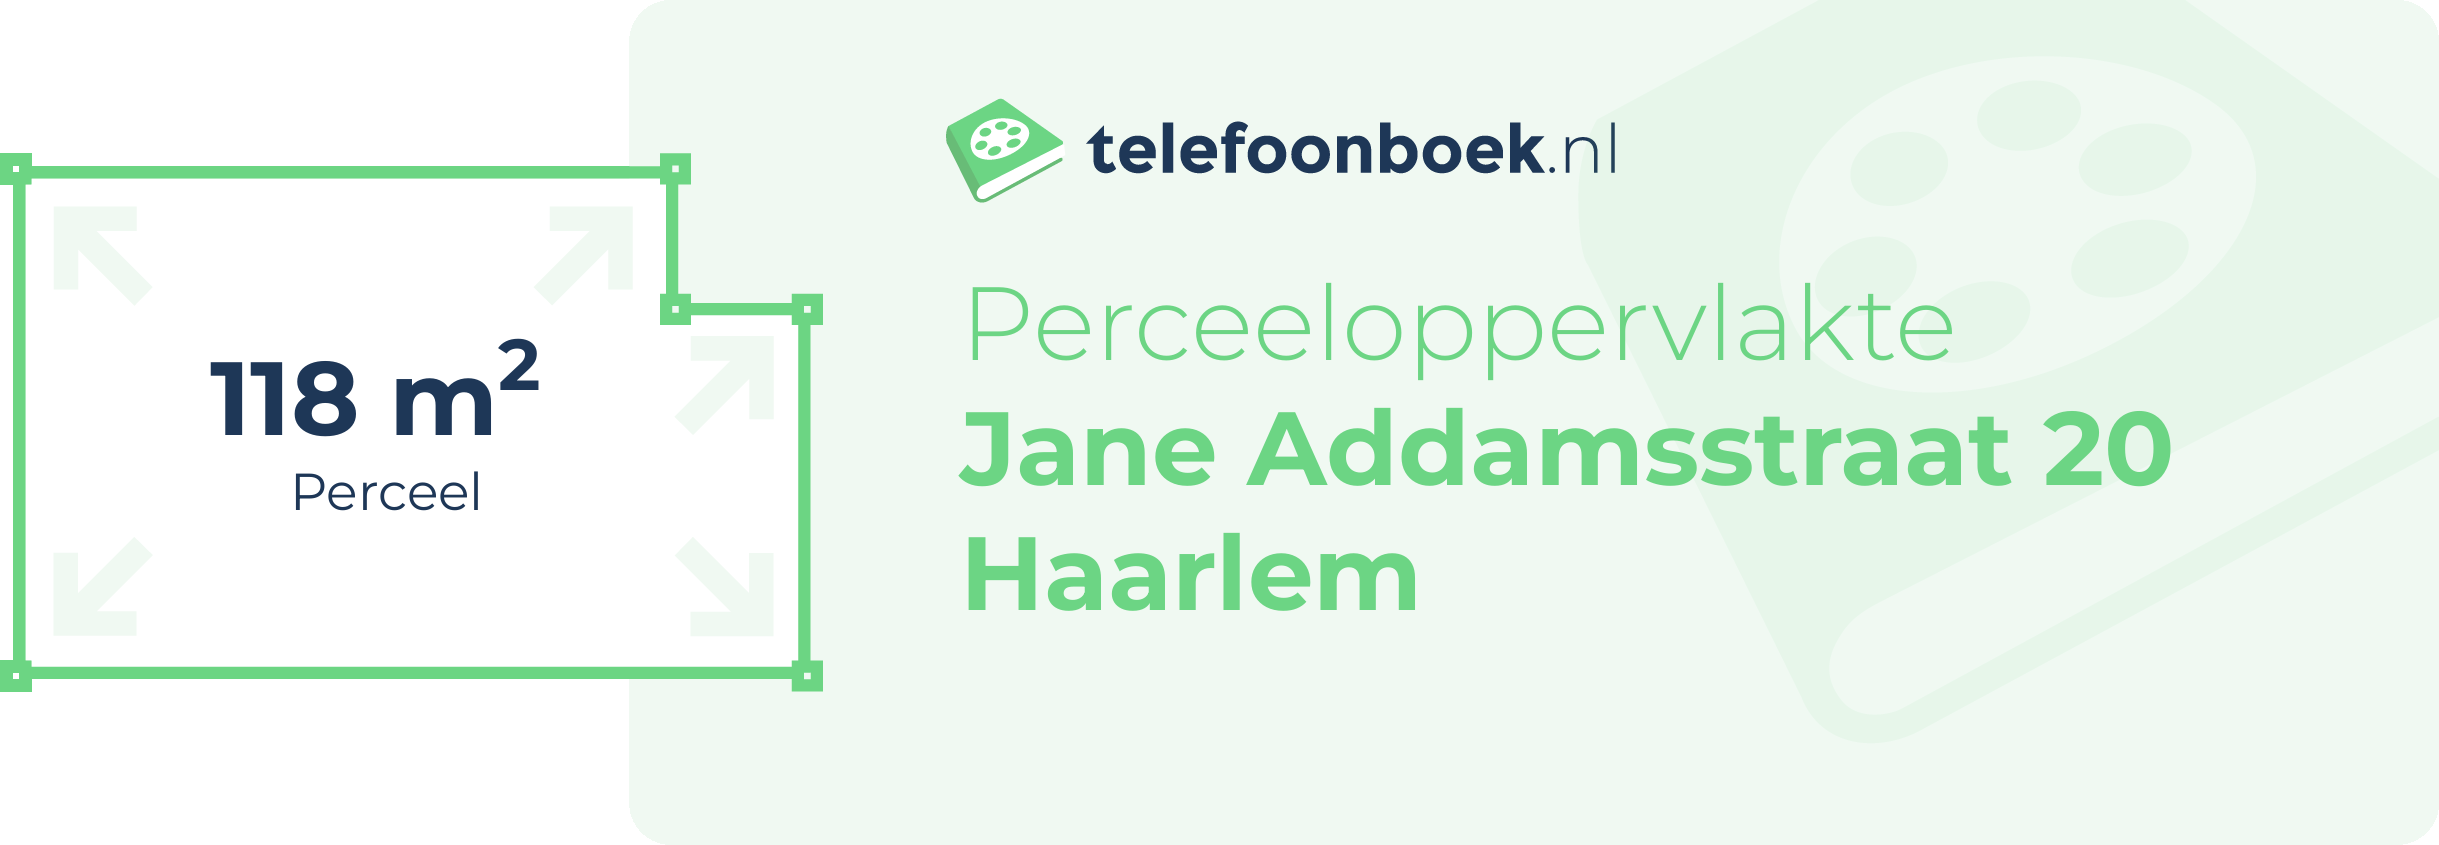 Perceeloppervlakte Jane Addamsstraat 20 Haarlem